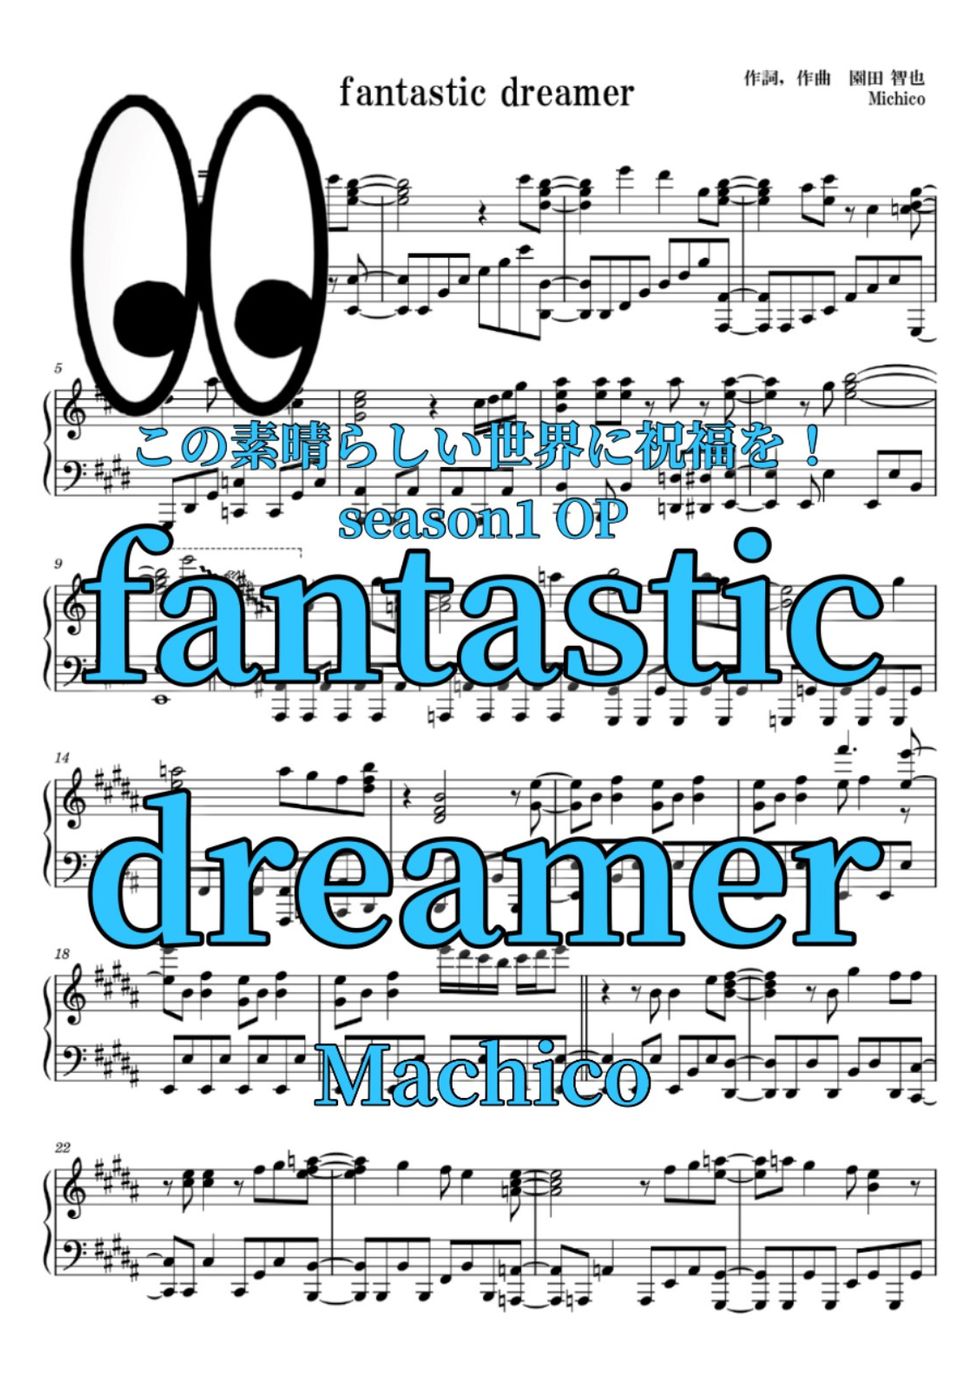 Machico - 【上級】fantastic dreamer (この素晴らしい世界に祝福を) by uRuMI